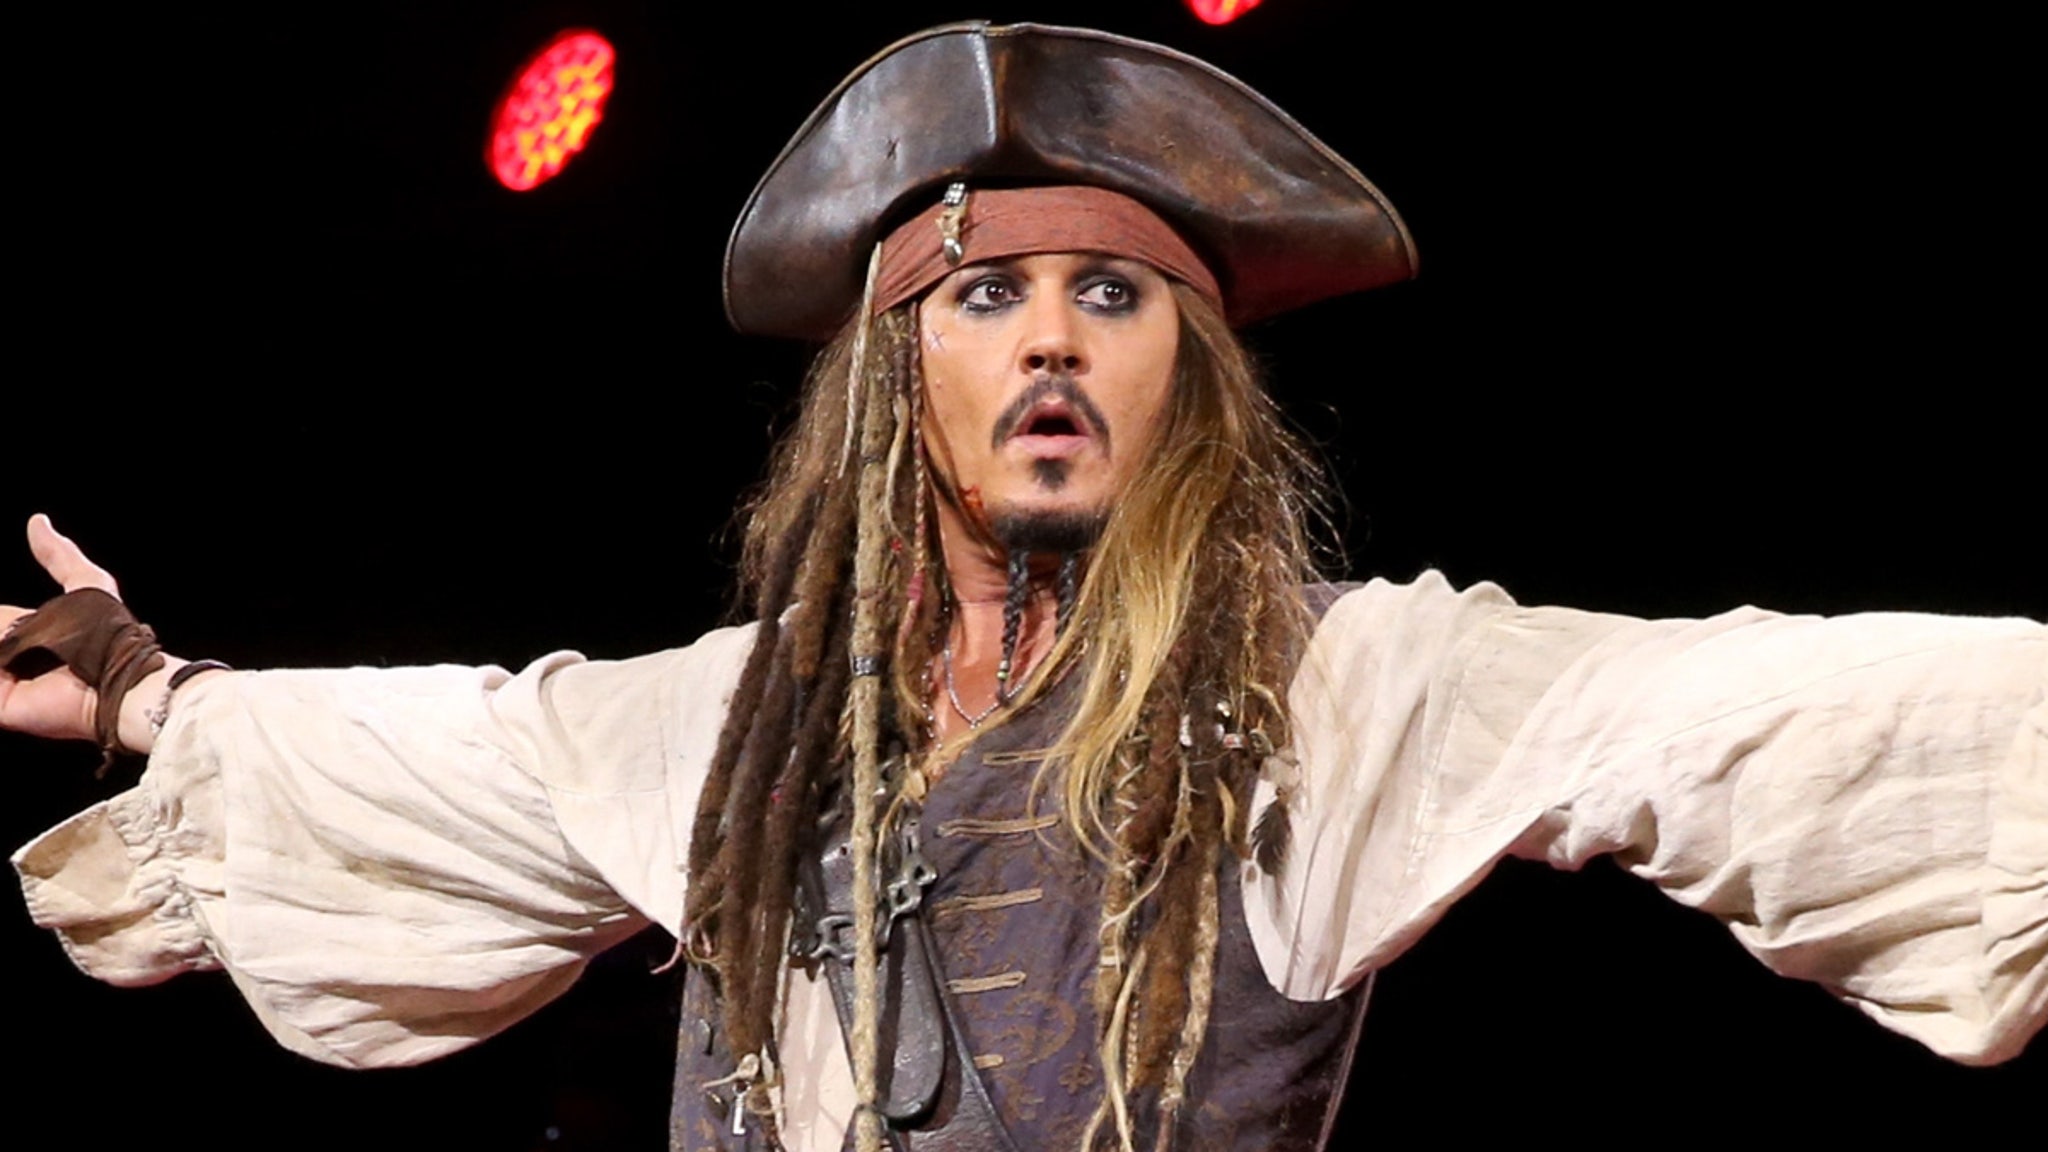 Johnny Depps Jack-Sparrow-Halloween-Kostüm verzeichnet steigende Verkaufszahlen